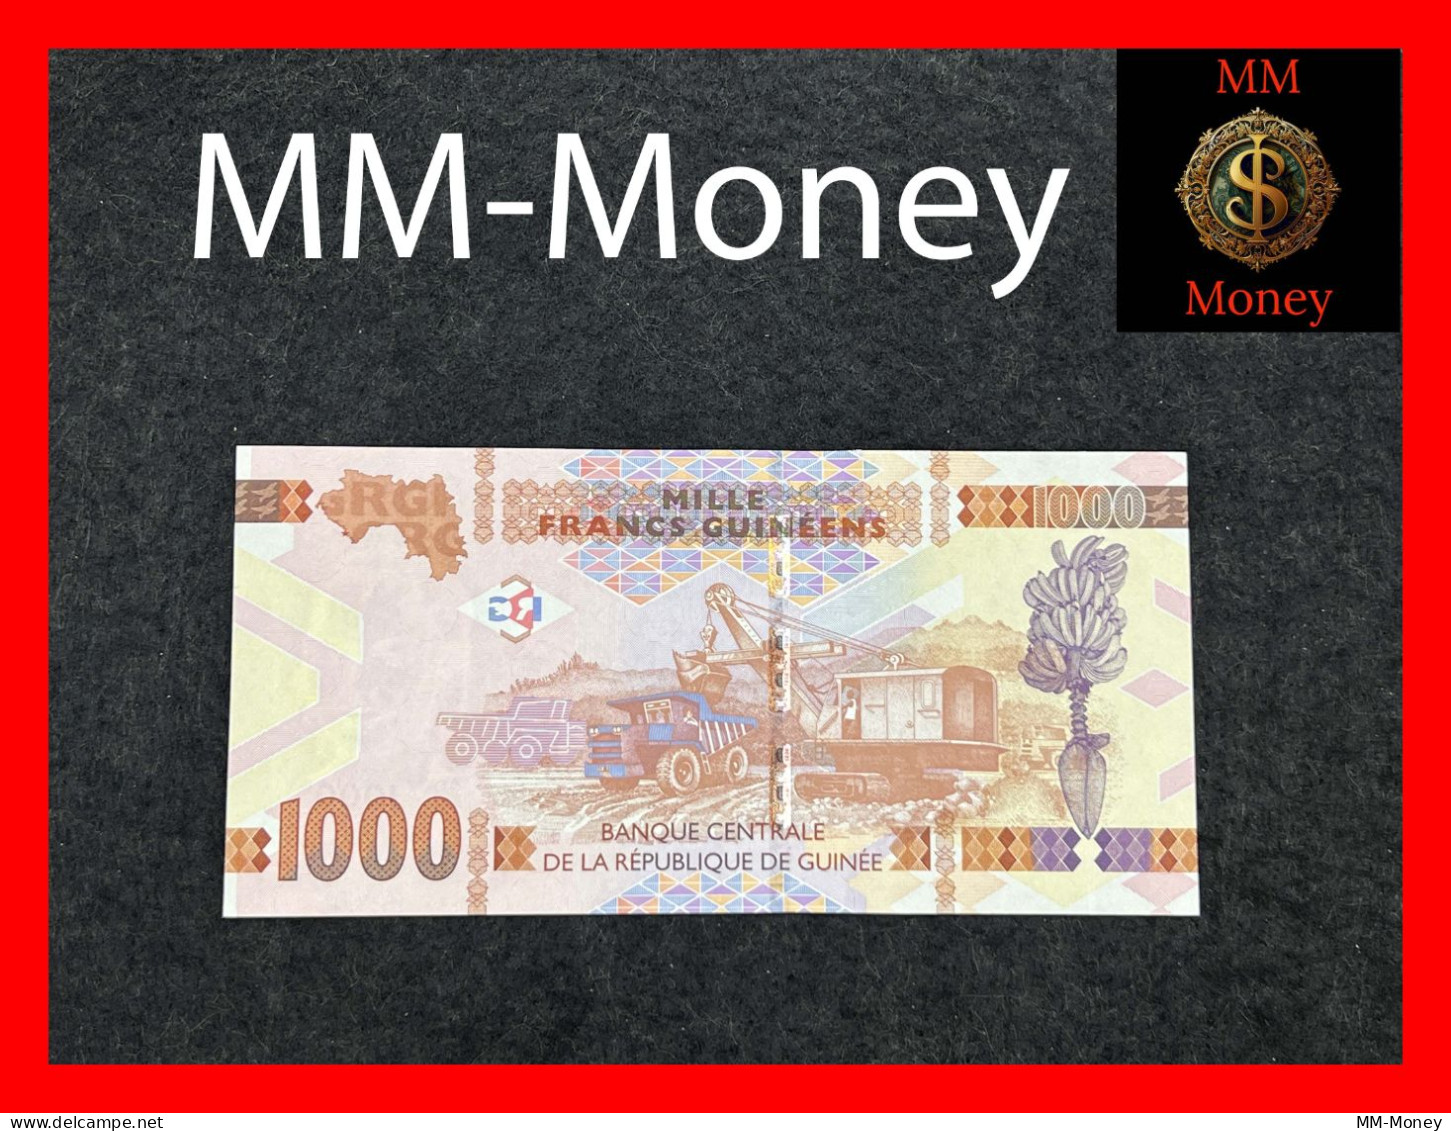 GUINEA 1000 Francs Guinéens 2015  P. 48  **BZ  Replacement**  UNC - Guinea